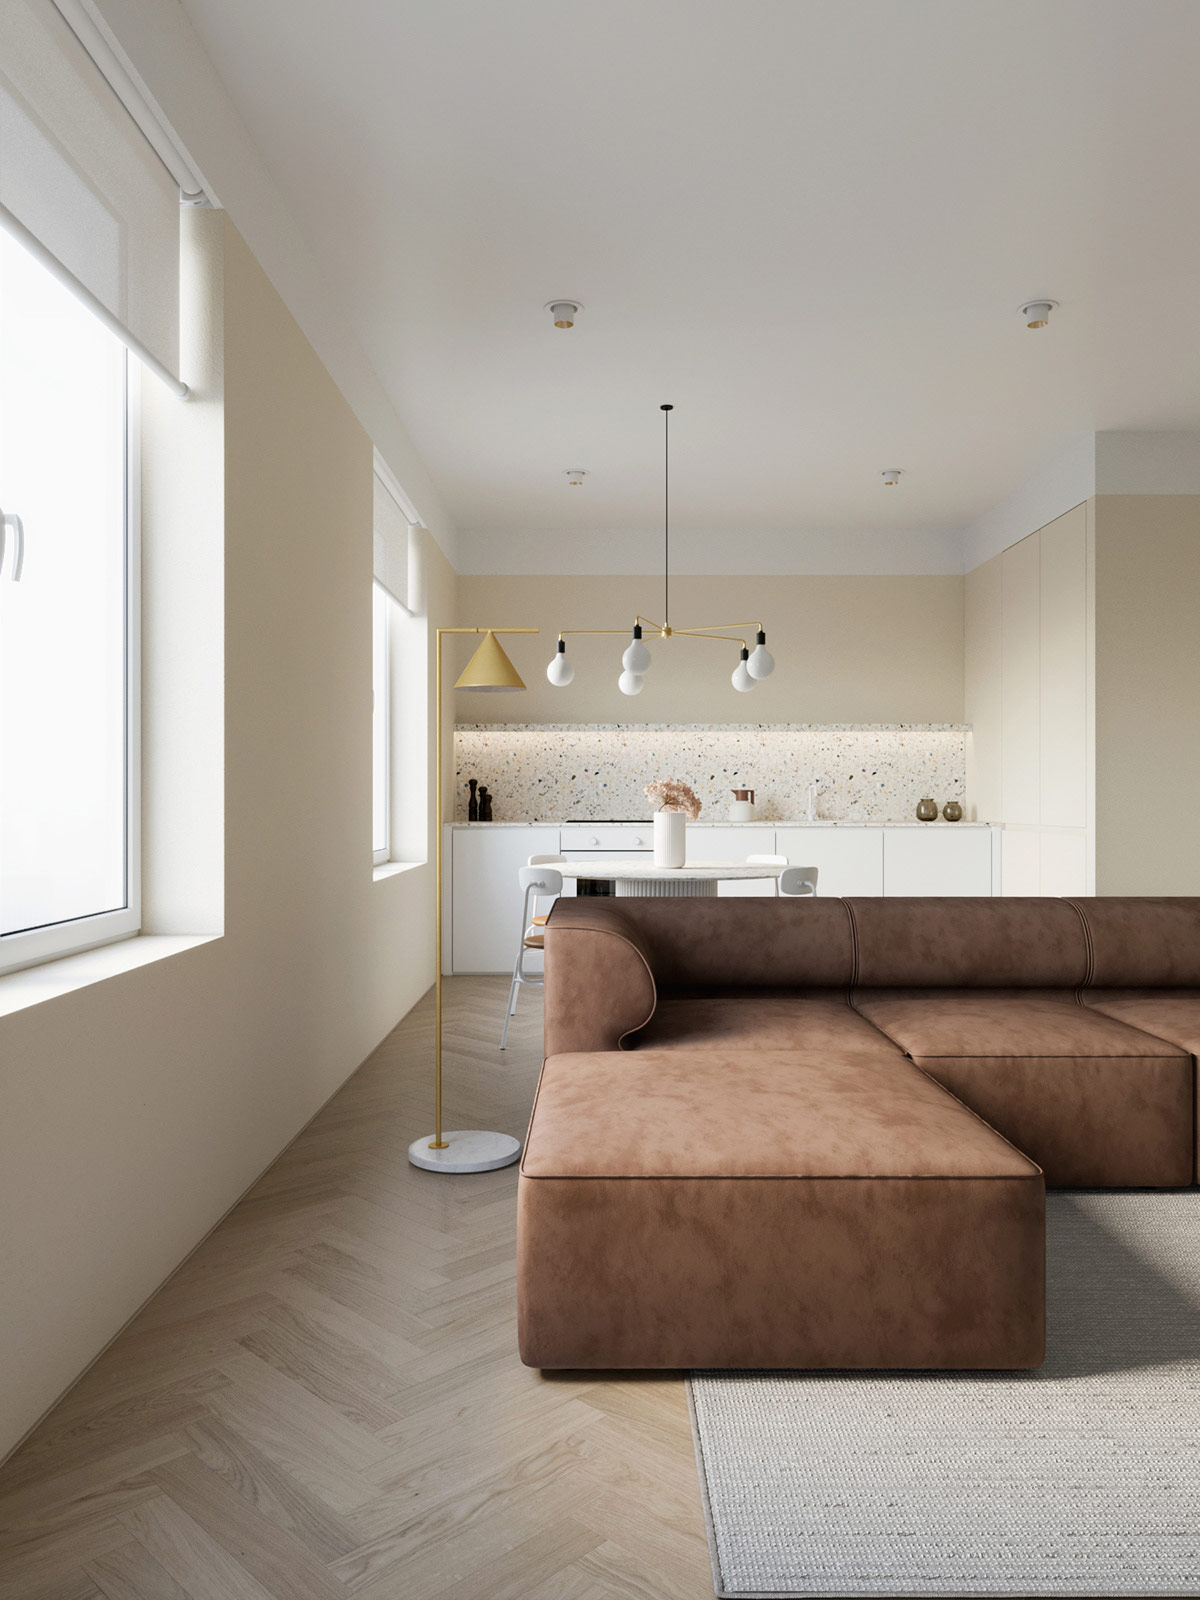  奶油色和咖啡色搭配 时尚而精致的现代公寓设计